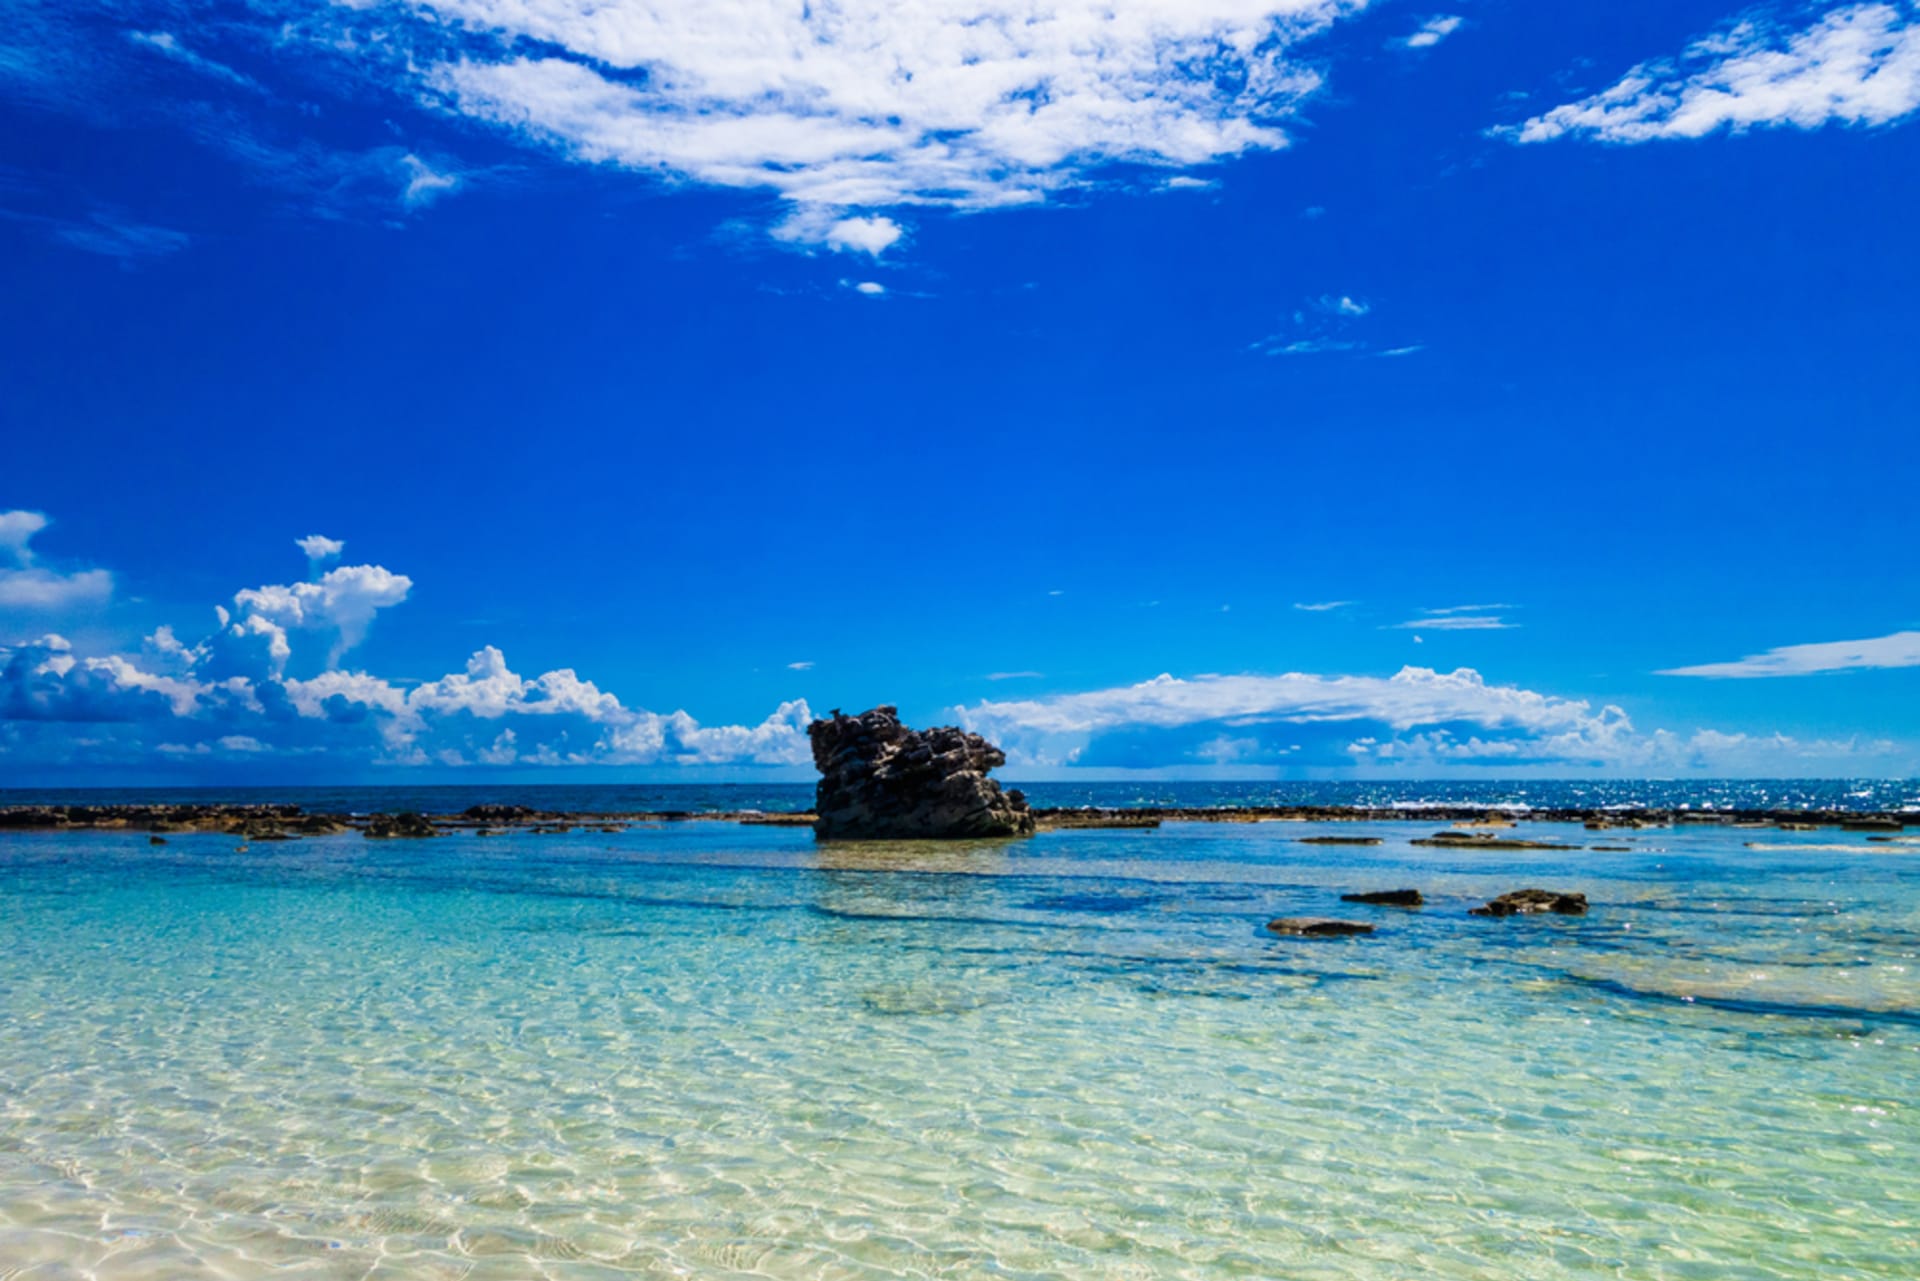 Kolumbijský ostrov San Andrés láka turisty na idylické pláže a průzračně čisté moře